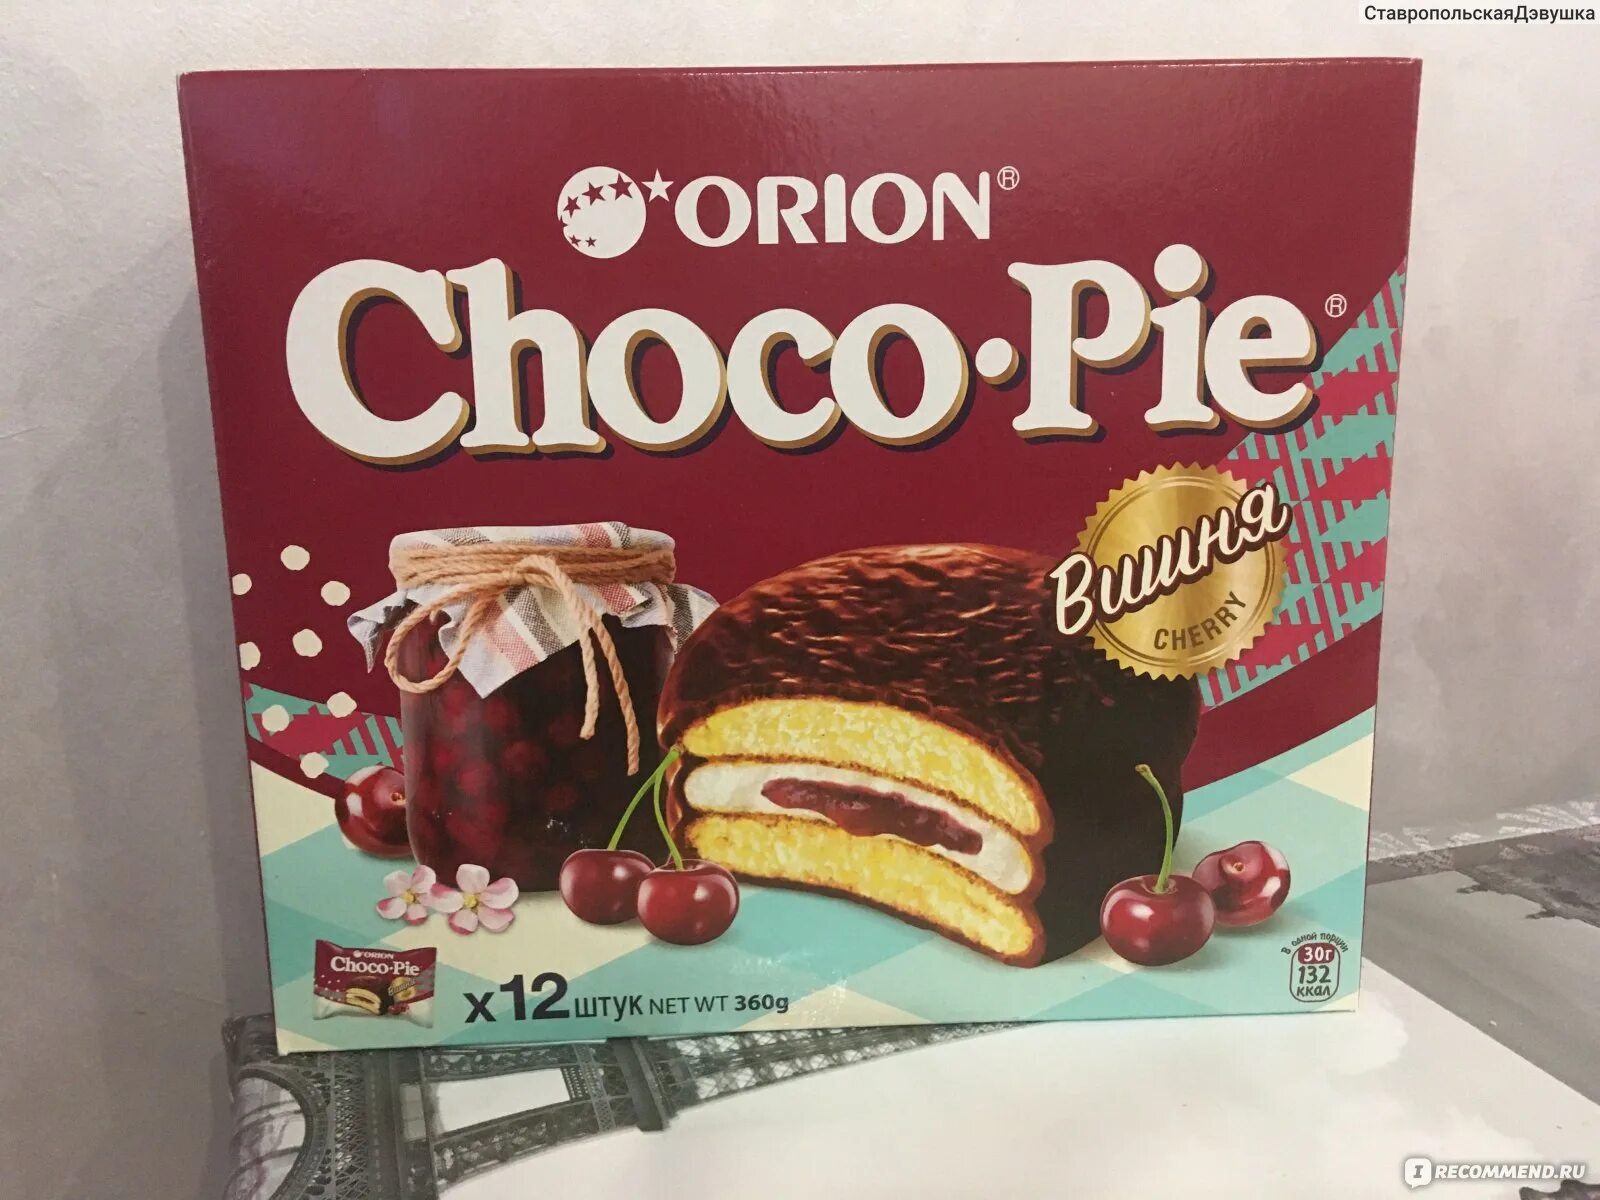 Чоко Пай Орион вкусы. Чокопай Ореон вкусы. Пирожное Choco pie Orion 360г. Чоко Пай Орион вишня.